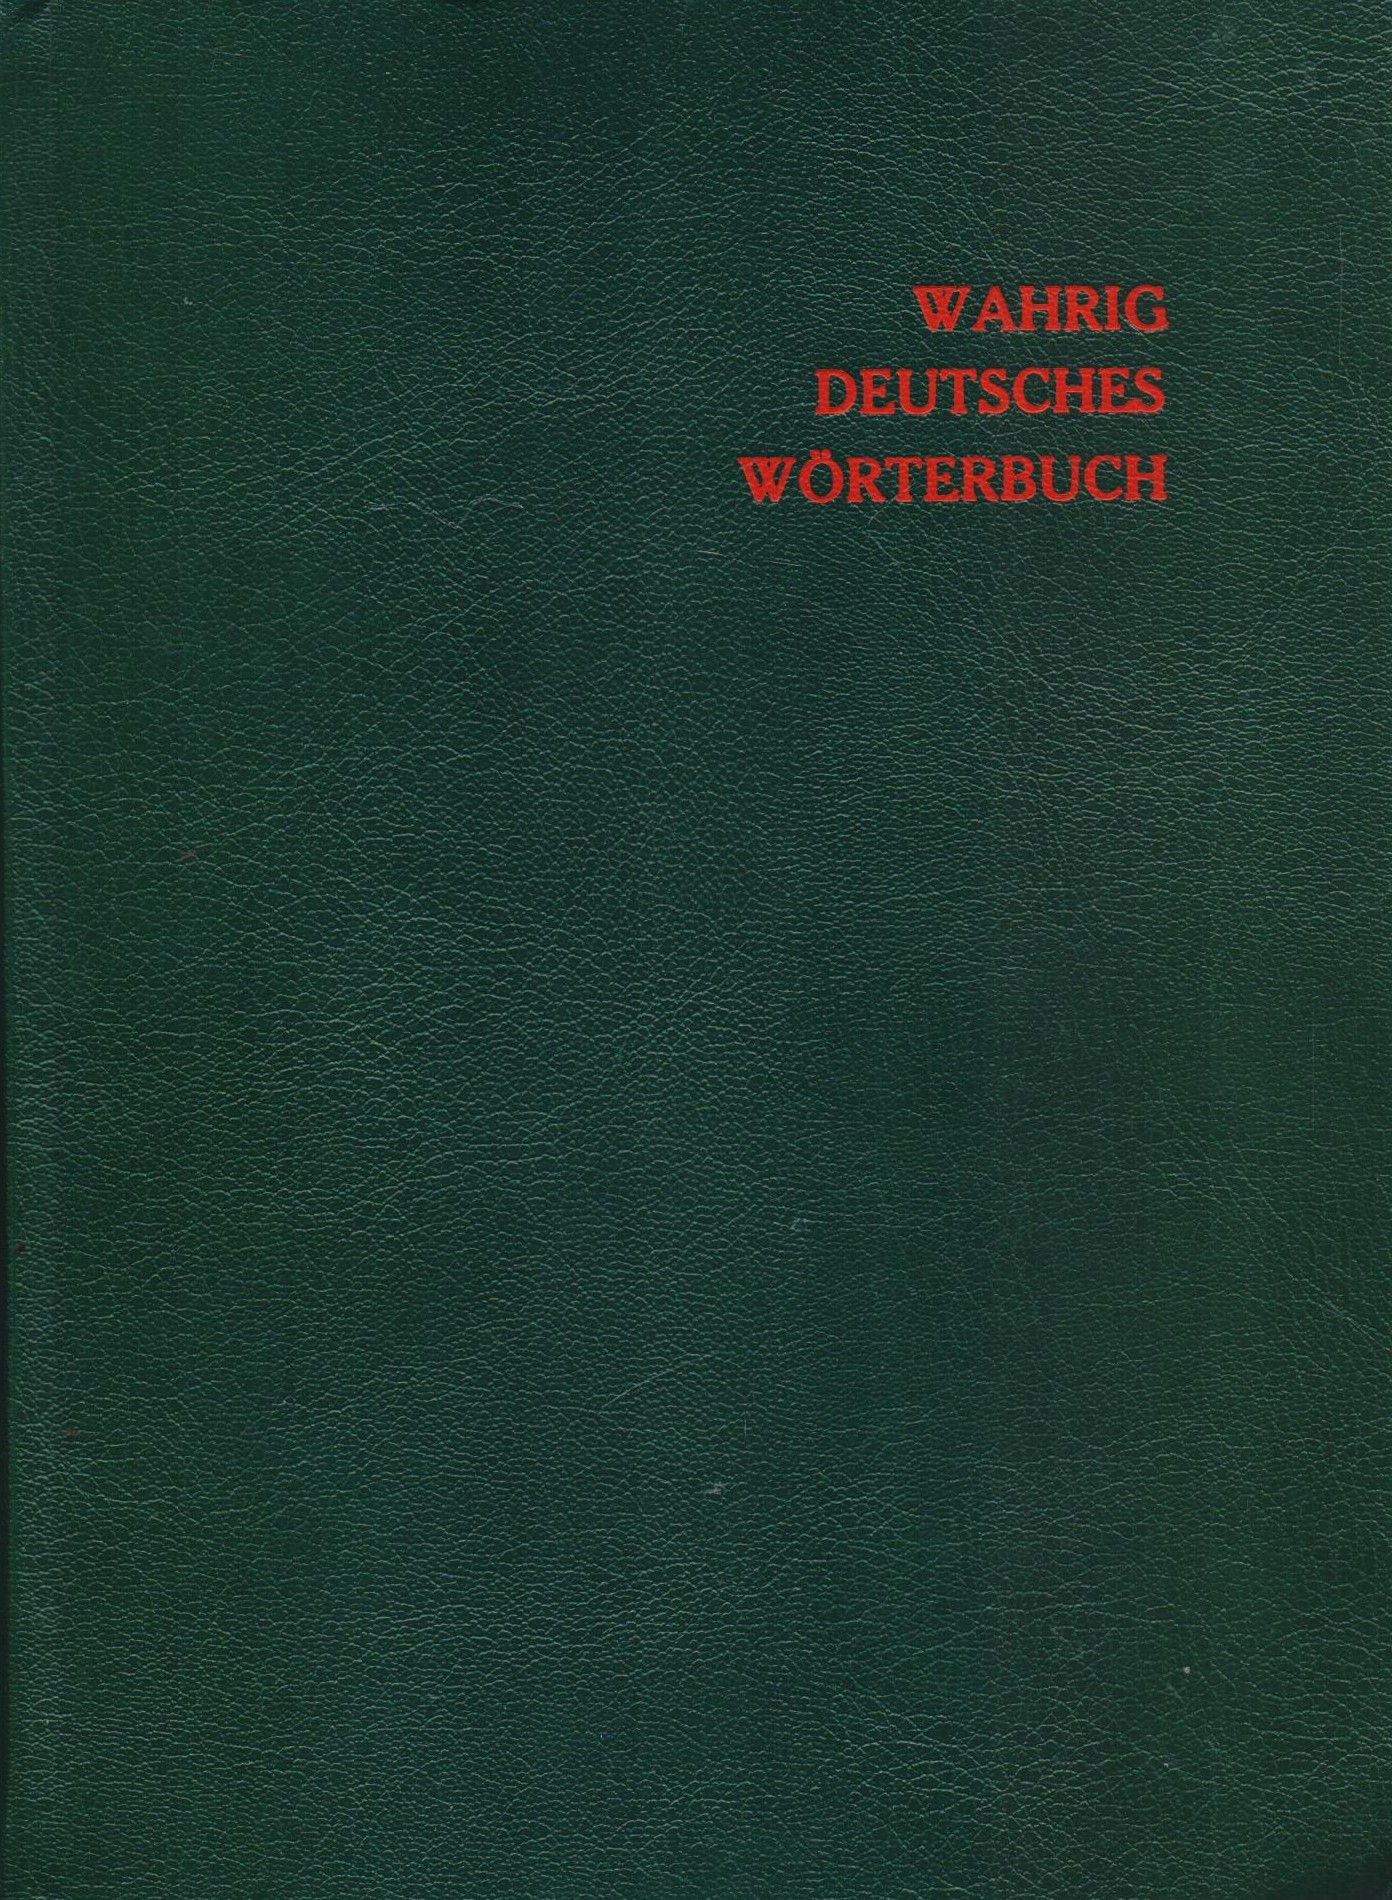 Deutsches Worterbuch Gerhard Wahrig